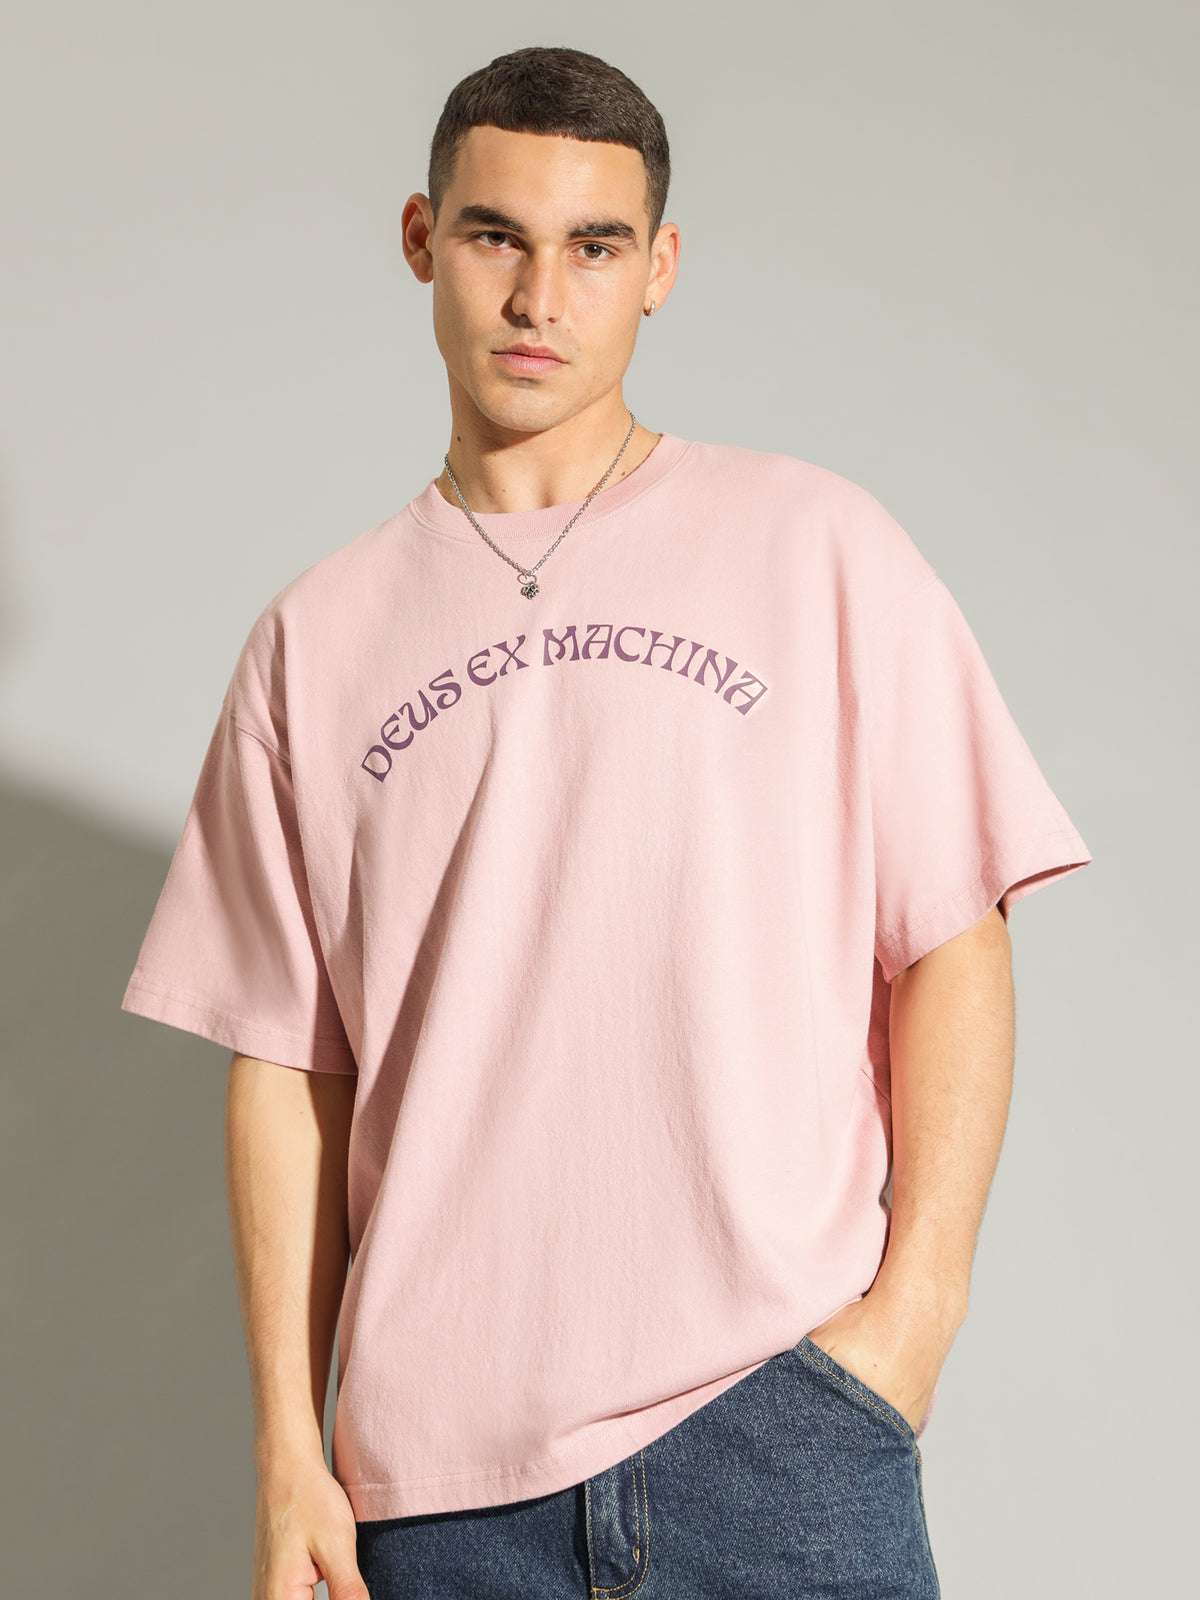 Mandala T-Shirt in Zephyr Pink